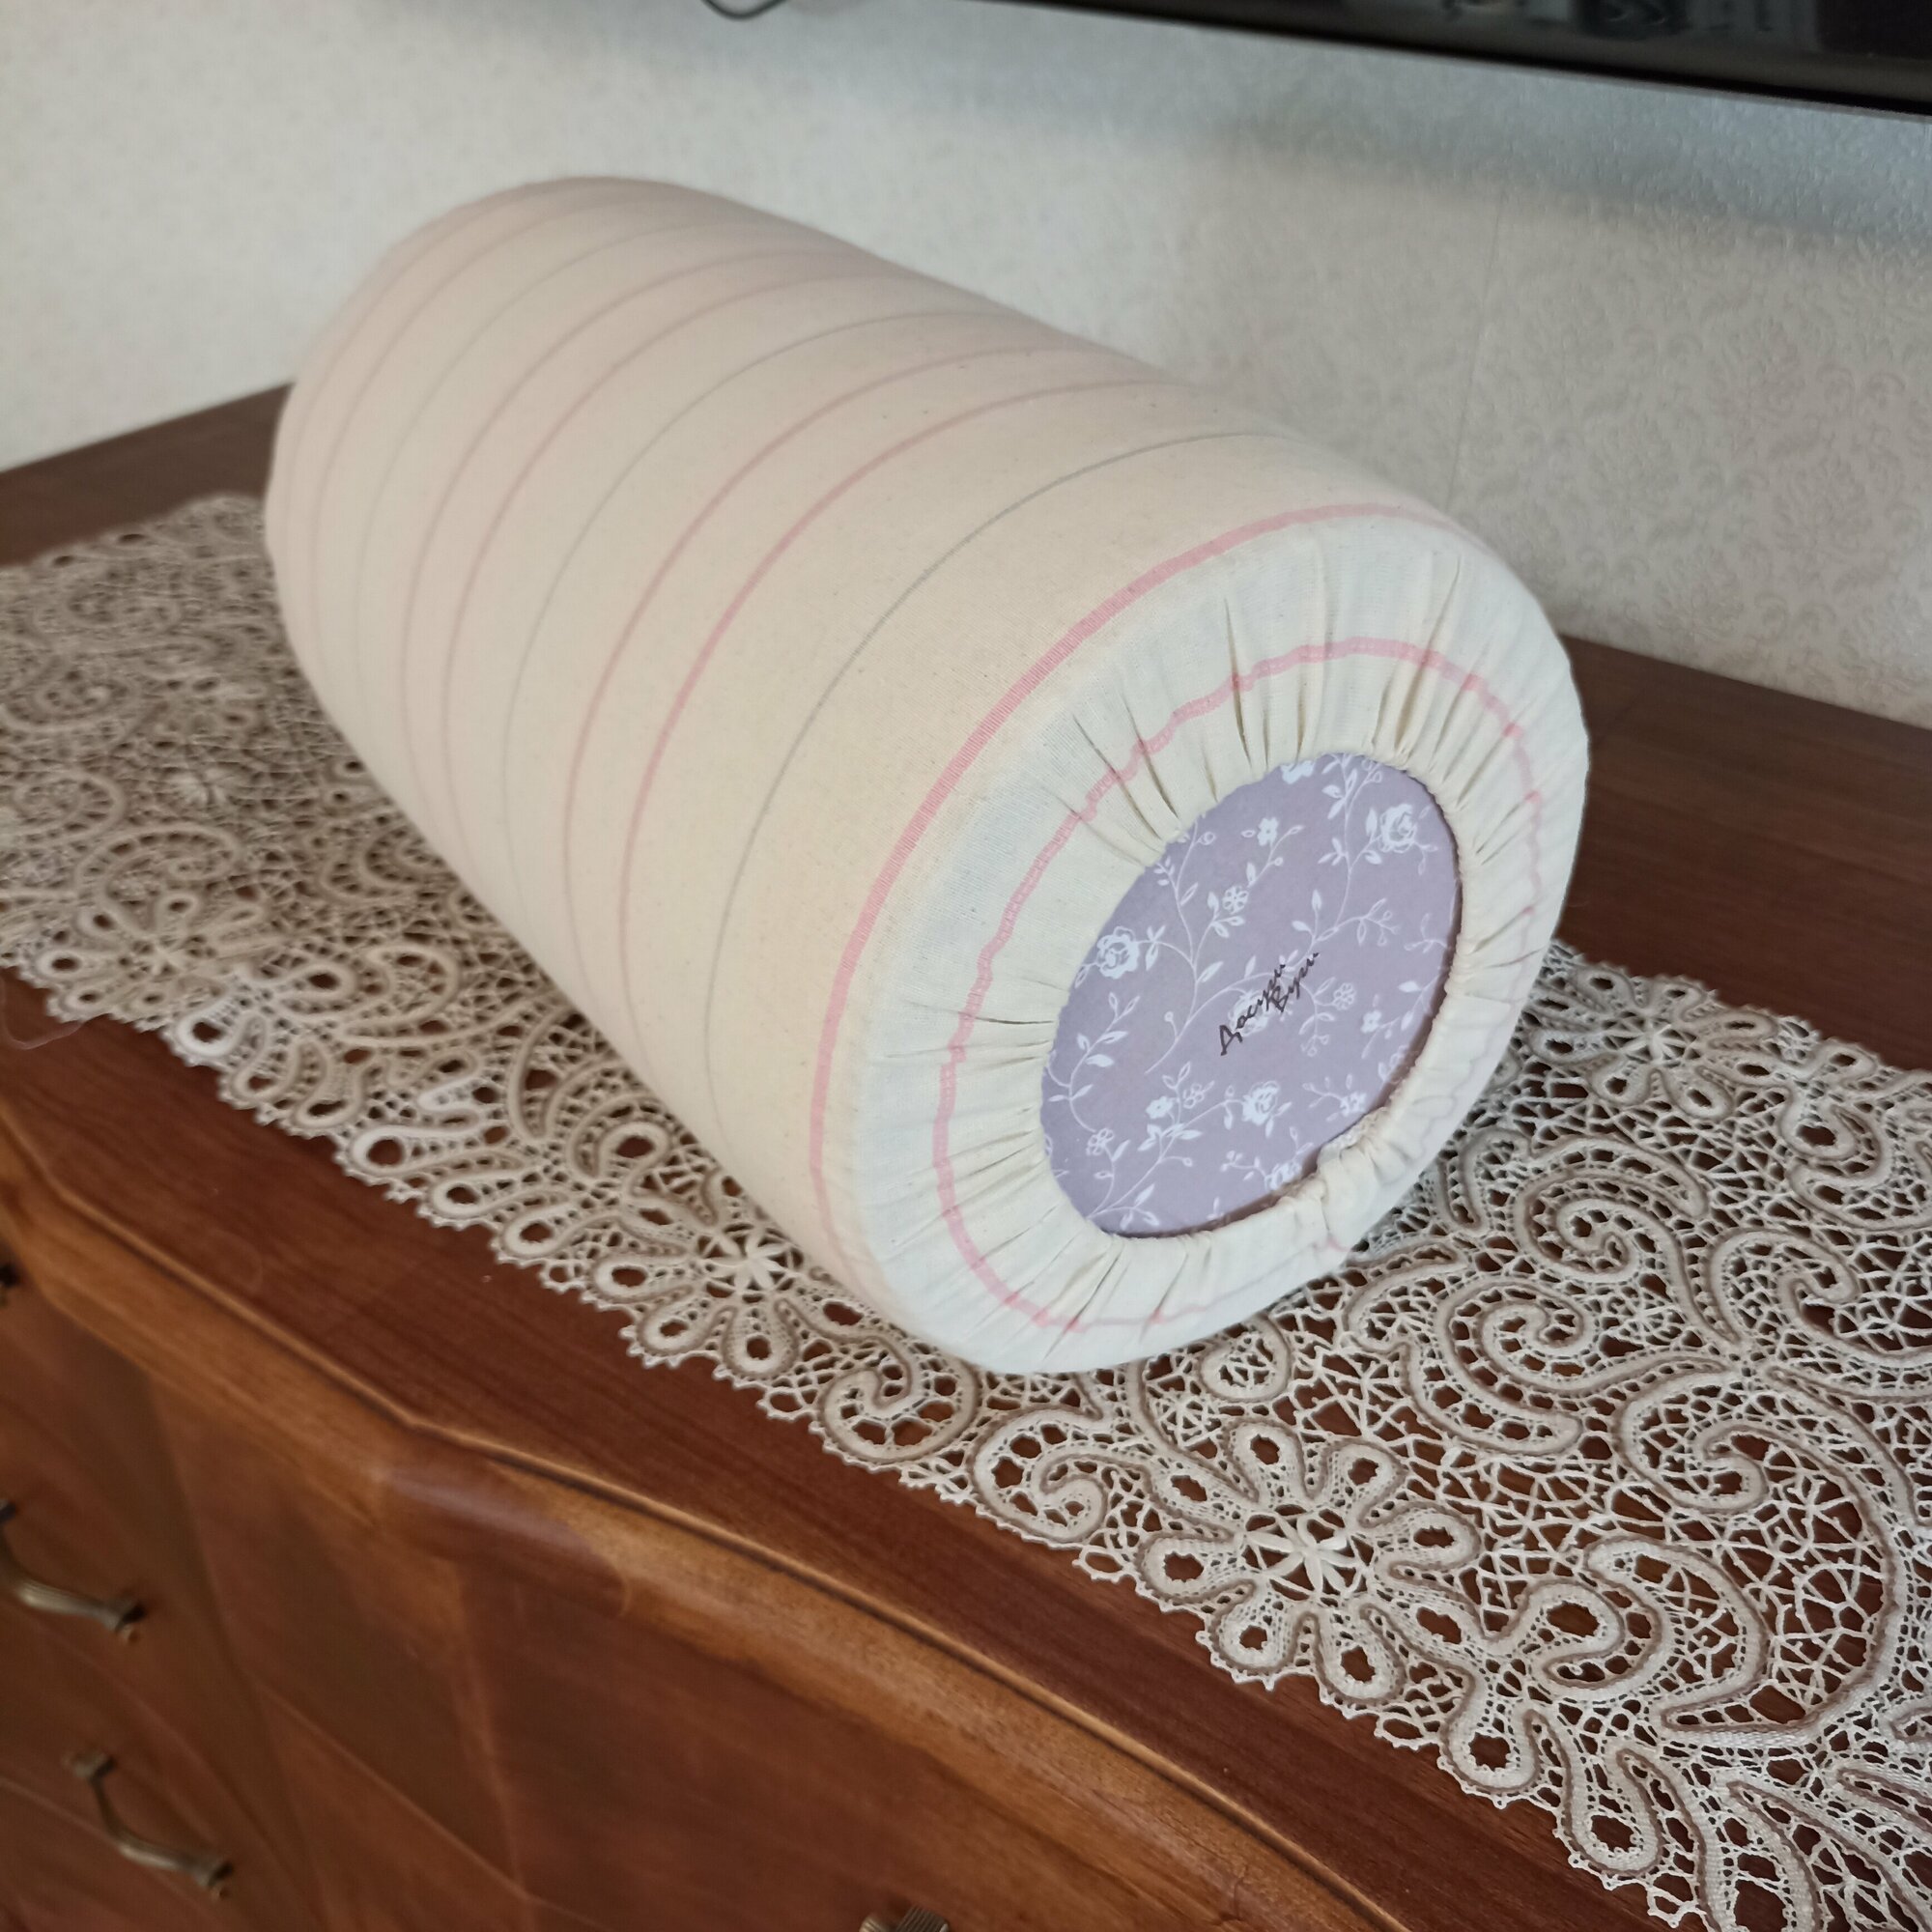 Подушка-валик "Мини" 24х37см 26 кг производство Досугивуги для кружевоплетения и плетения макраме.